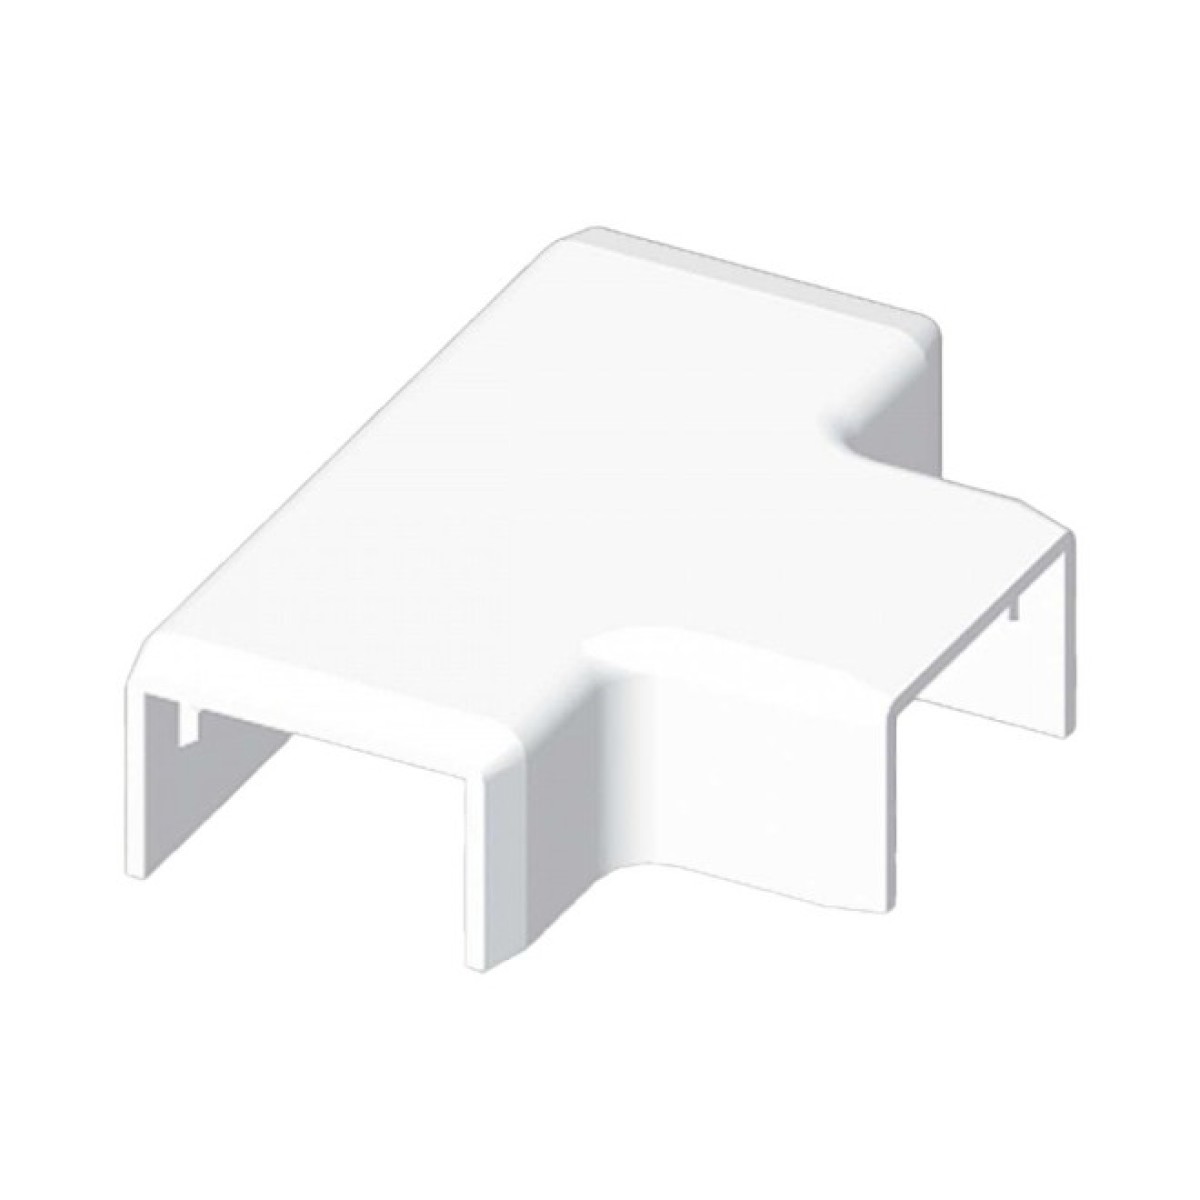 Тройник для LHD 25х15 белого цвета; Серия LH; ПВХ 256_256.jpg